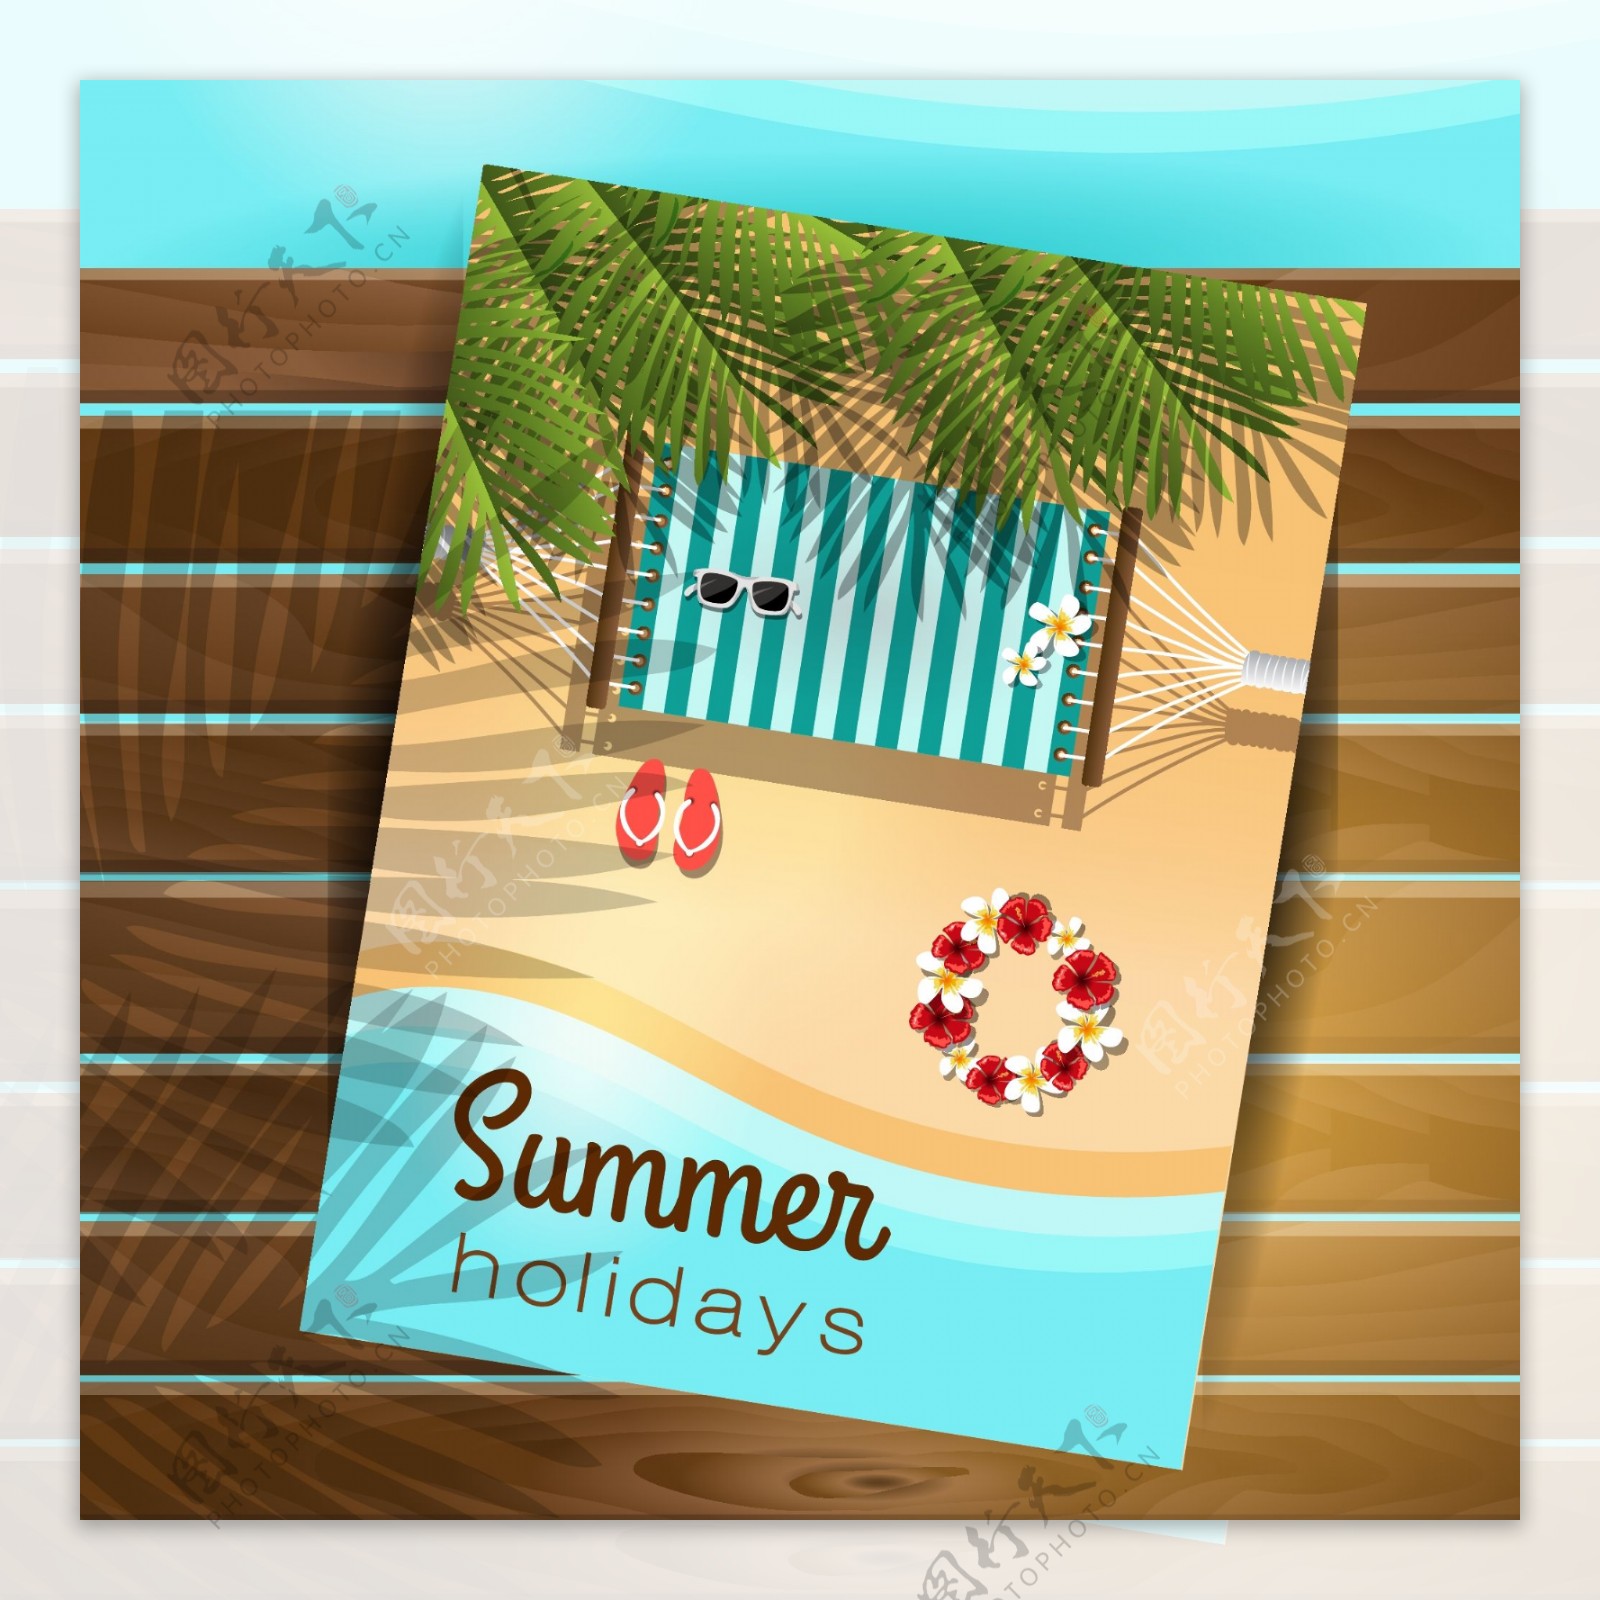 夏季沙滩度假风景插画